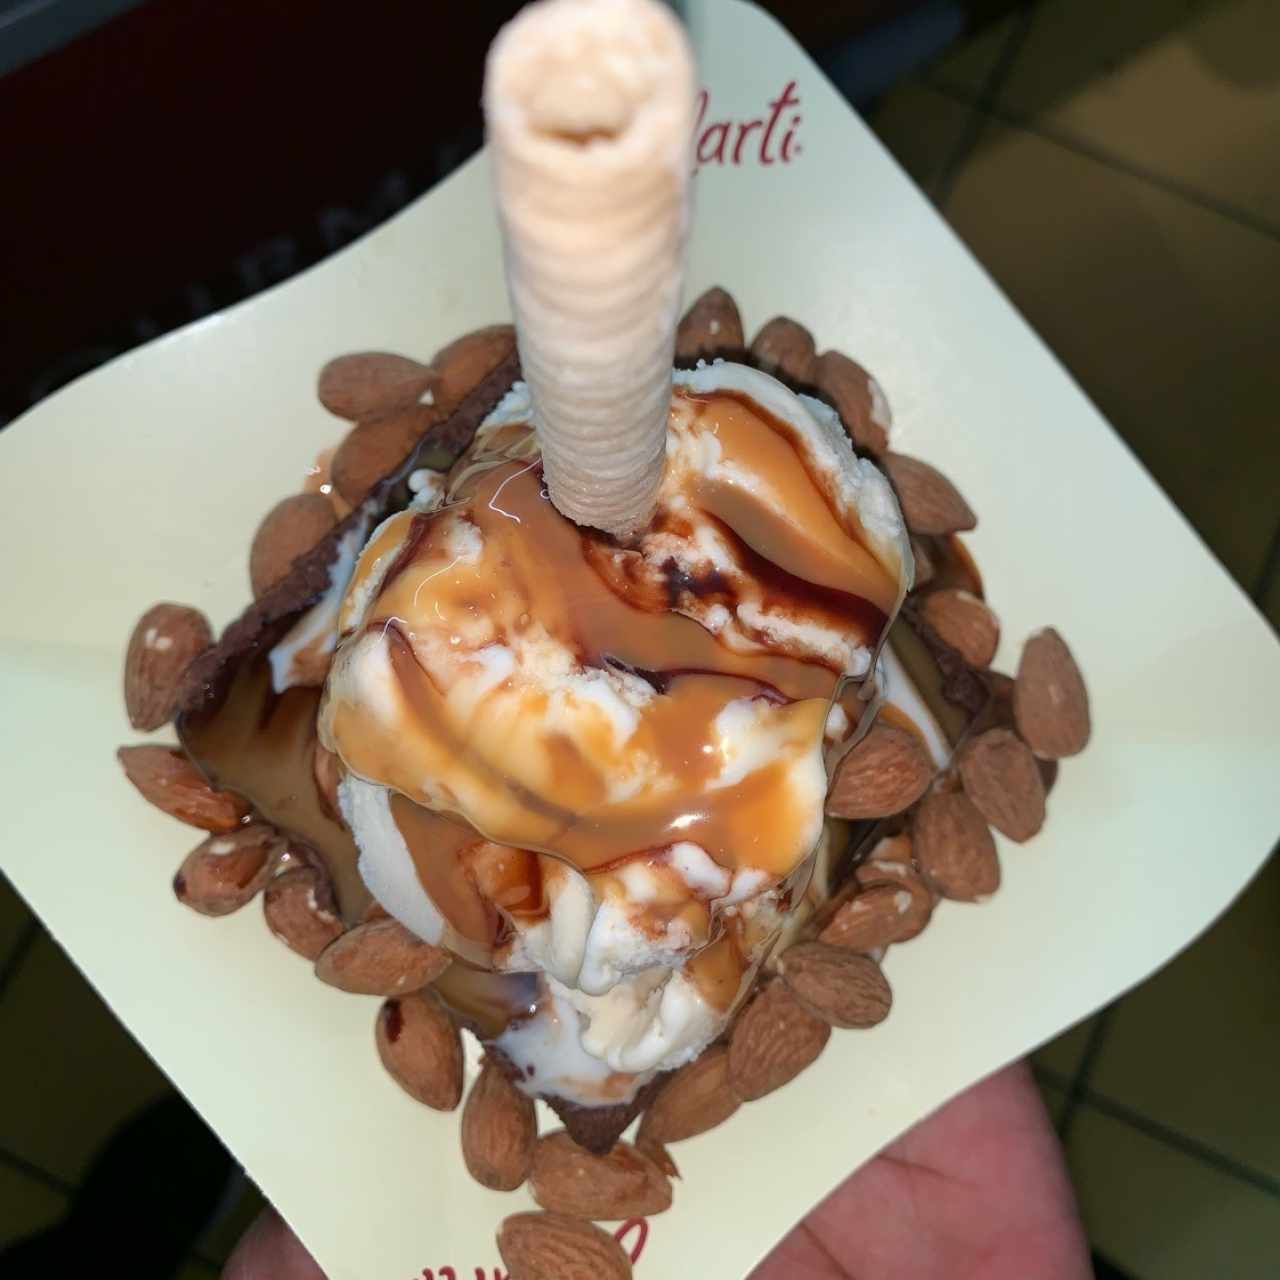 Brownie con helado y nueces. 😍